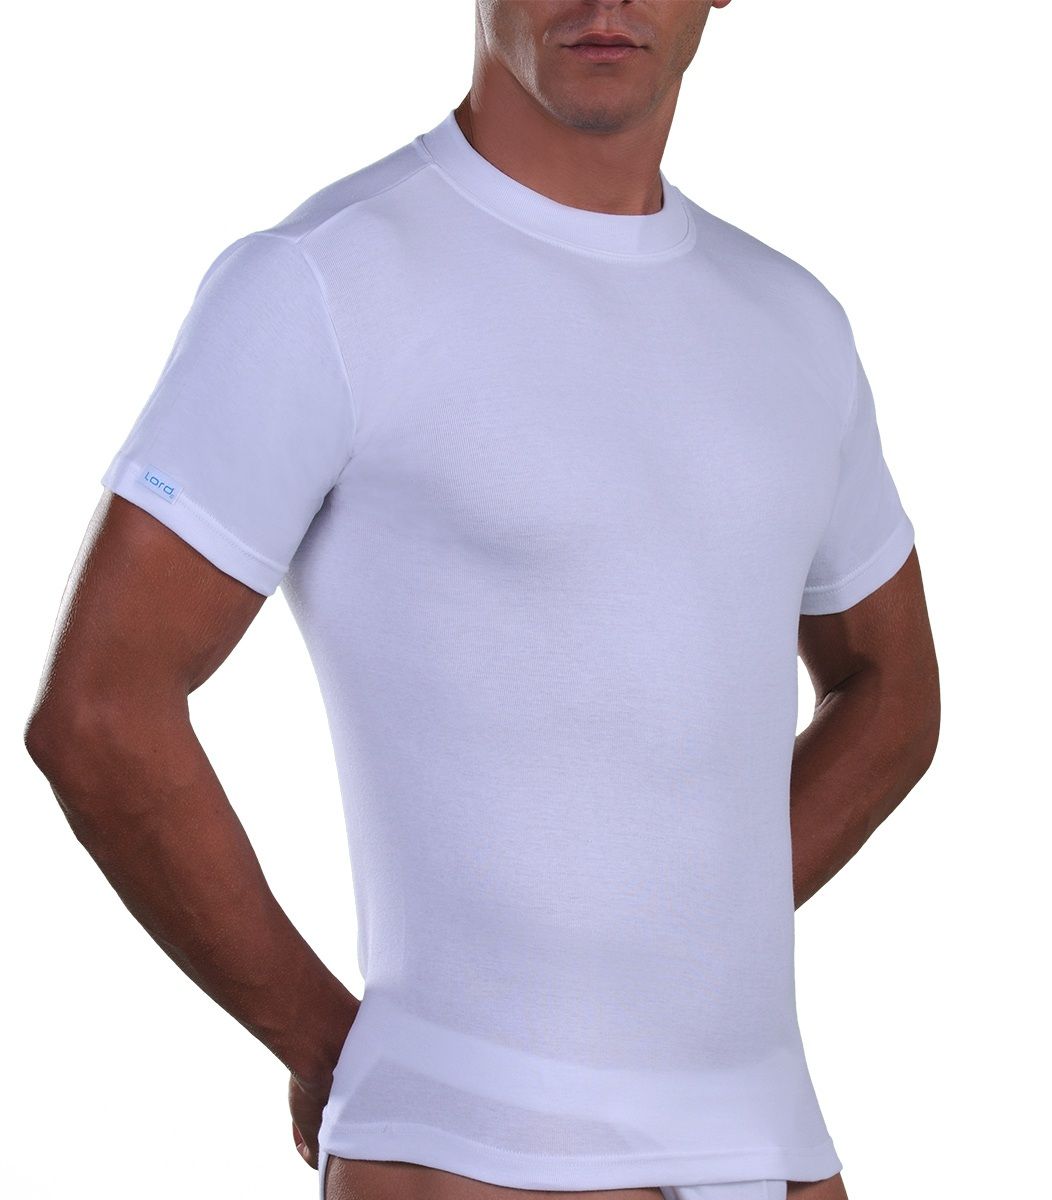 T-Shirt, crew neck, Cotton, white